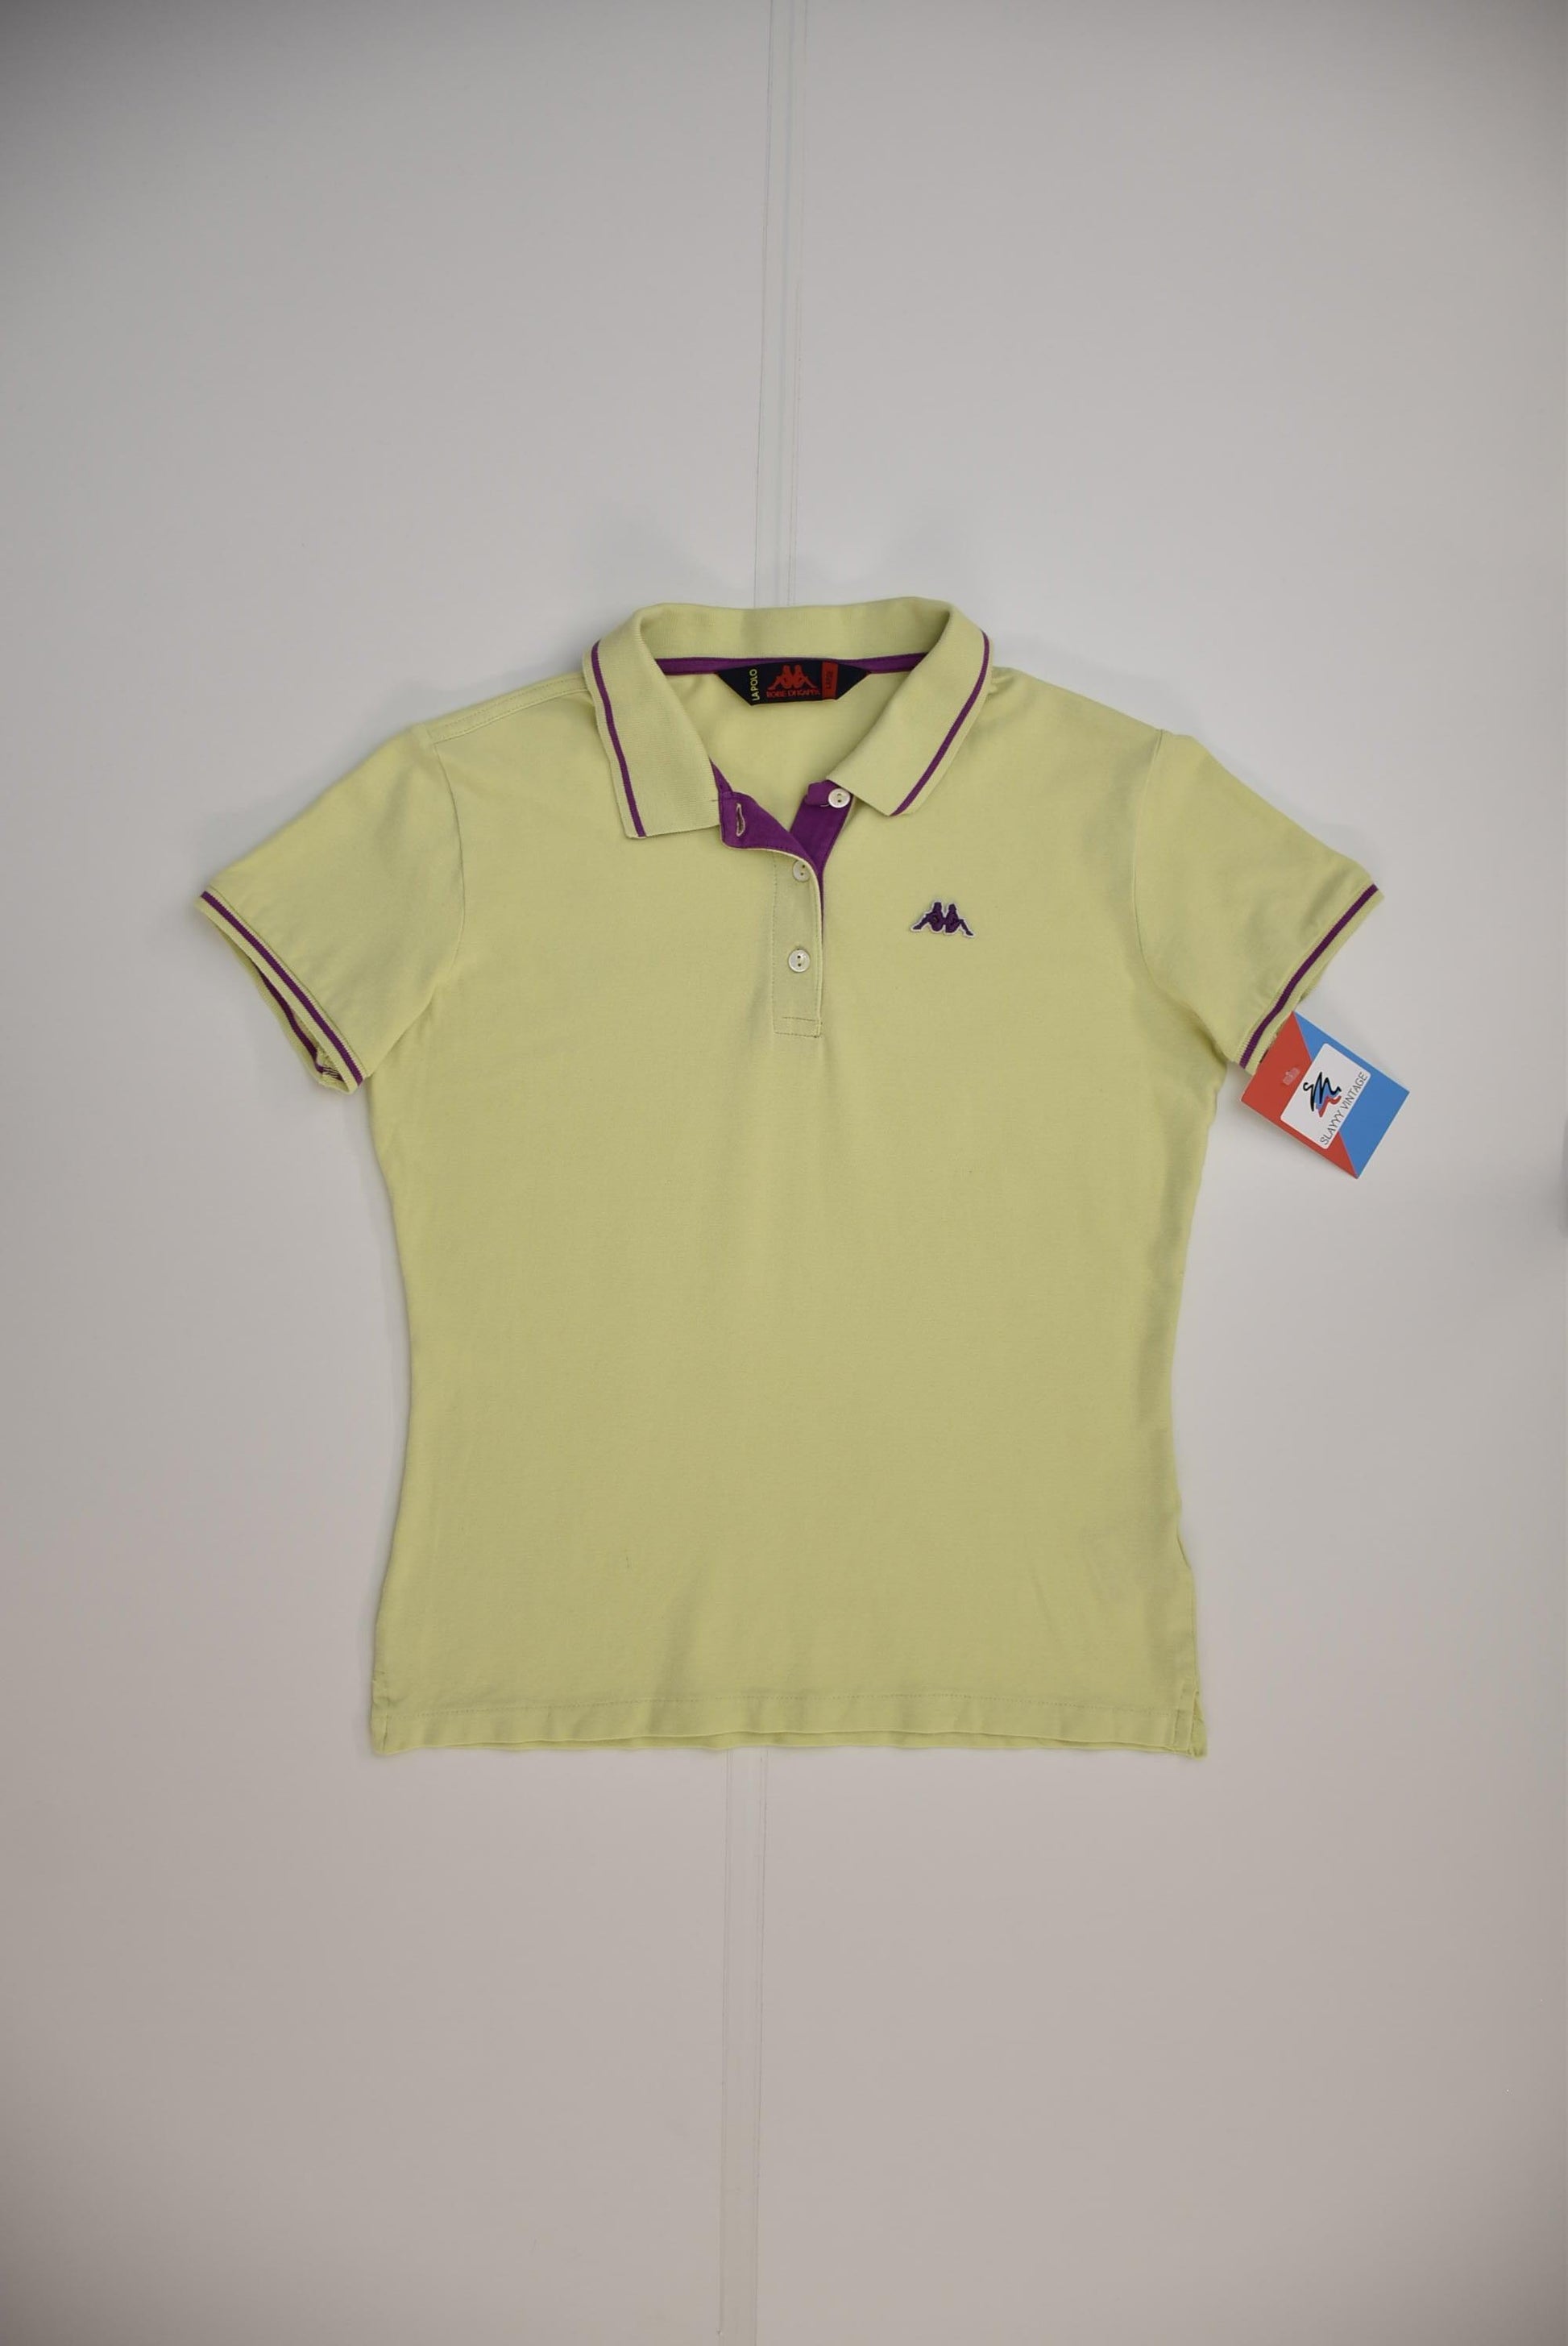 Kappa Polo Shirt Baby Tee (kids L) - Slayyy Vintage